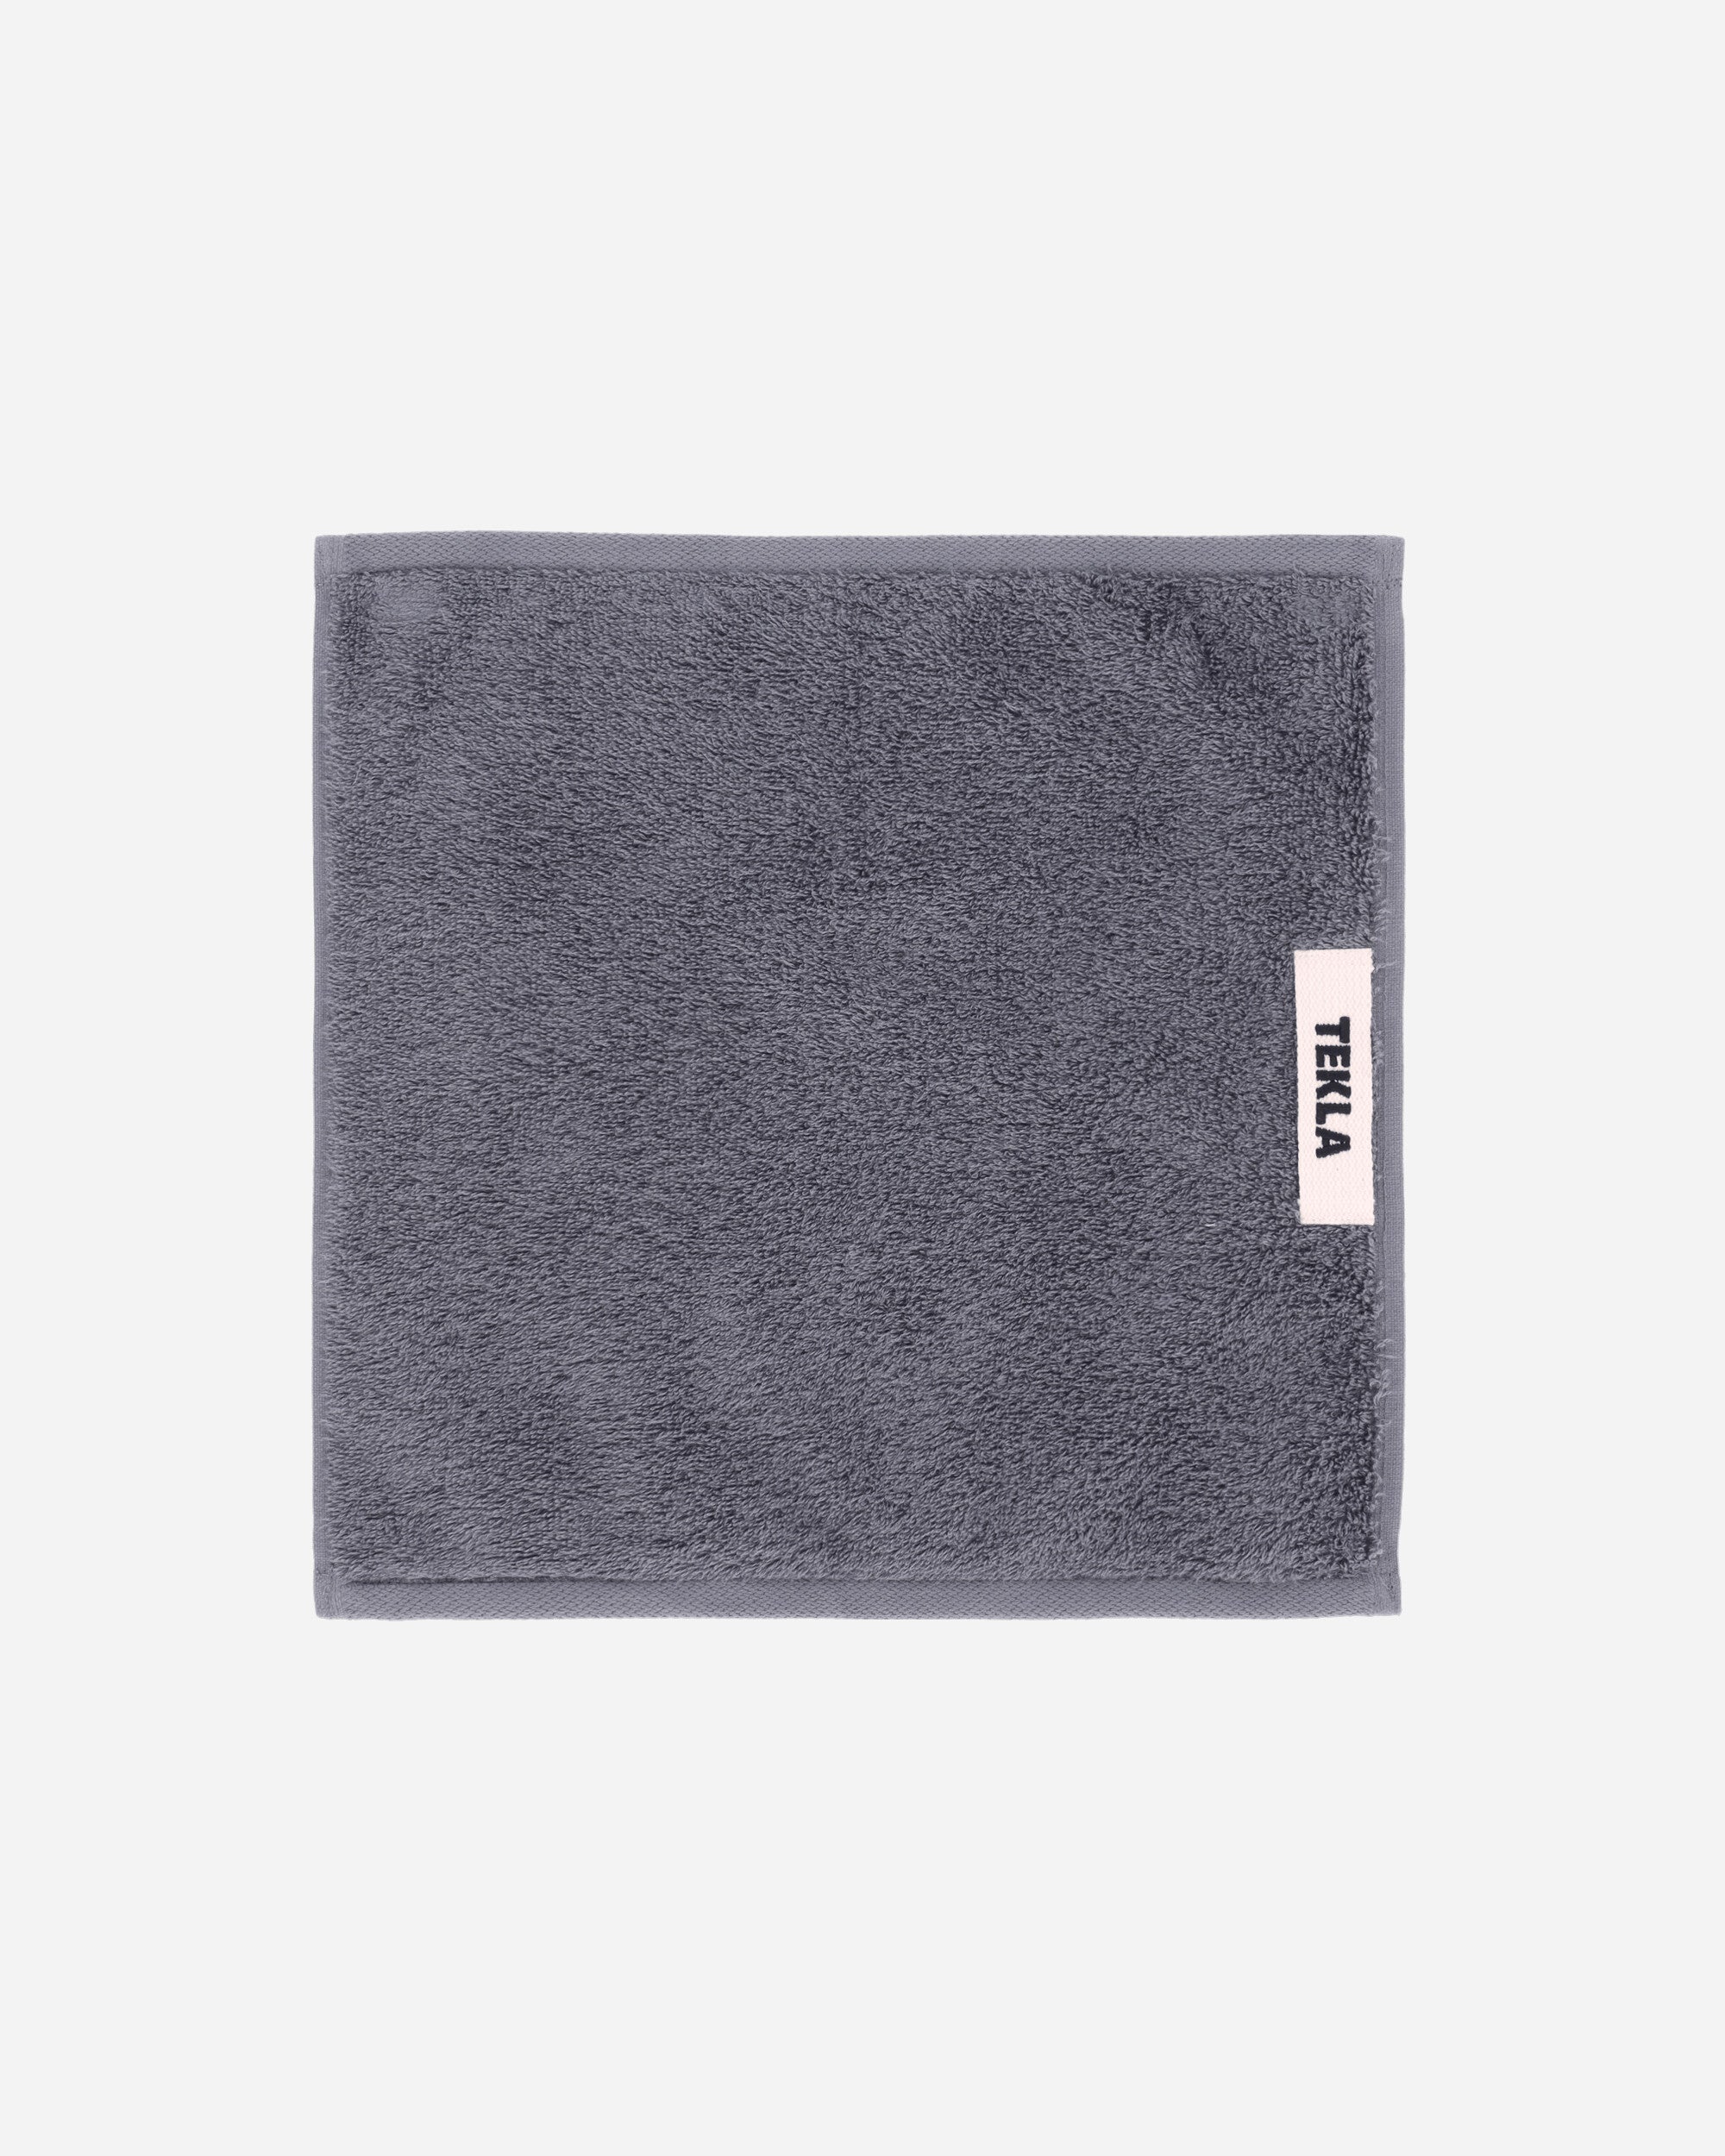 Tekla Terry Towel - Solid 30X30 Charcoal Grey Textile Bath Towels TT-30x30 CG